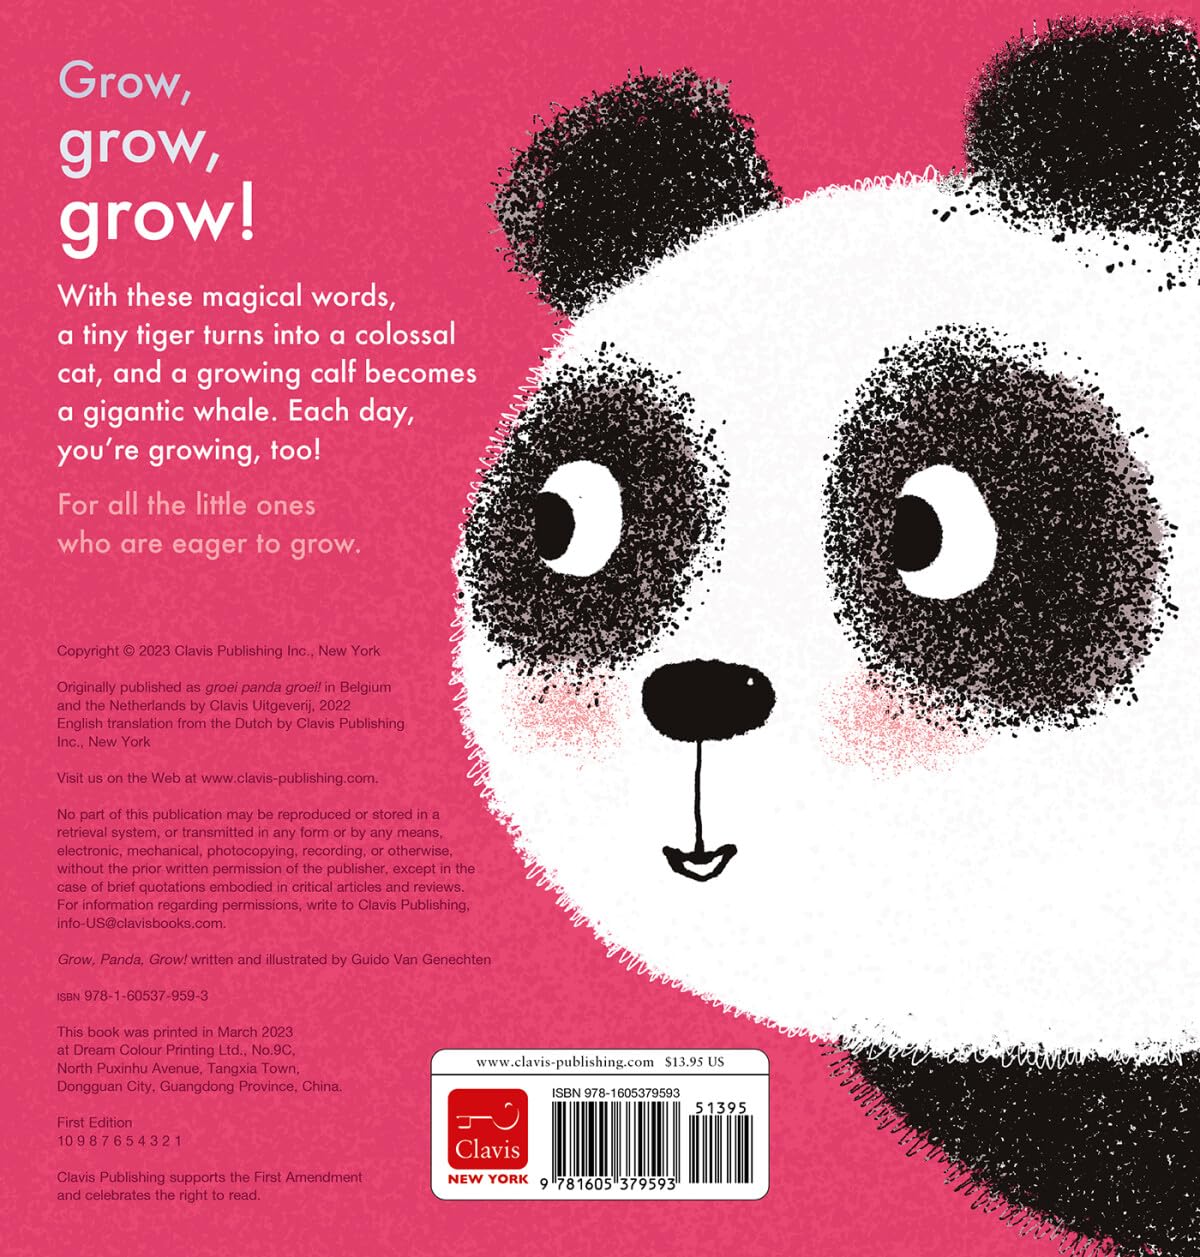 Grow, Panda, Grow